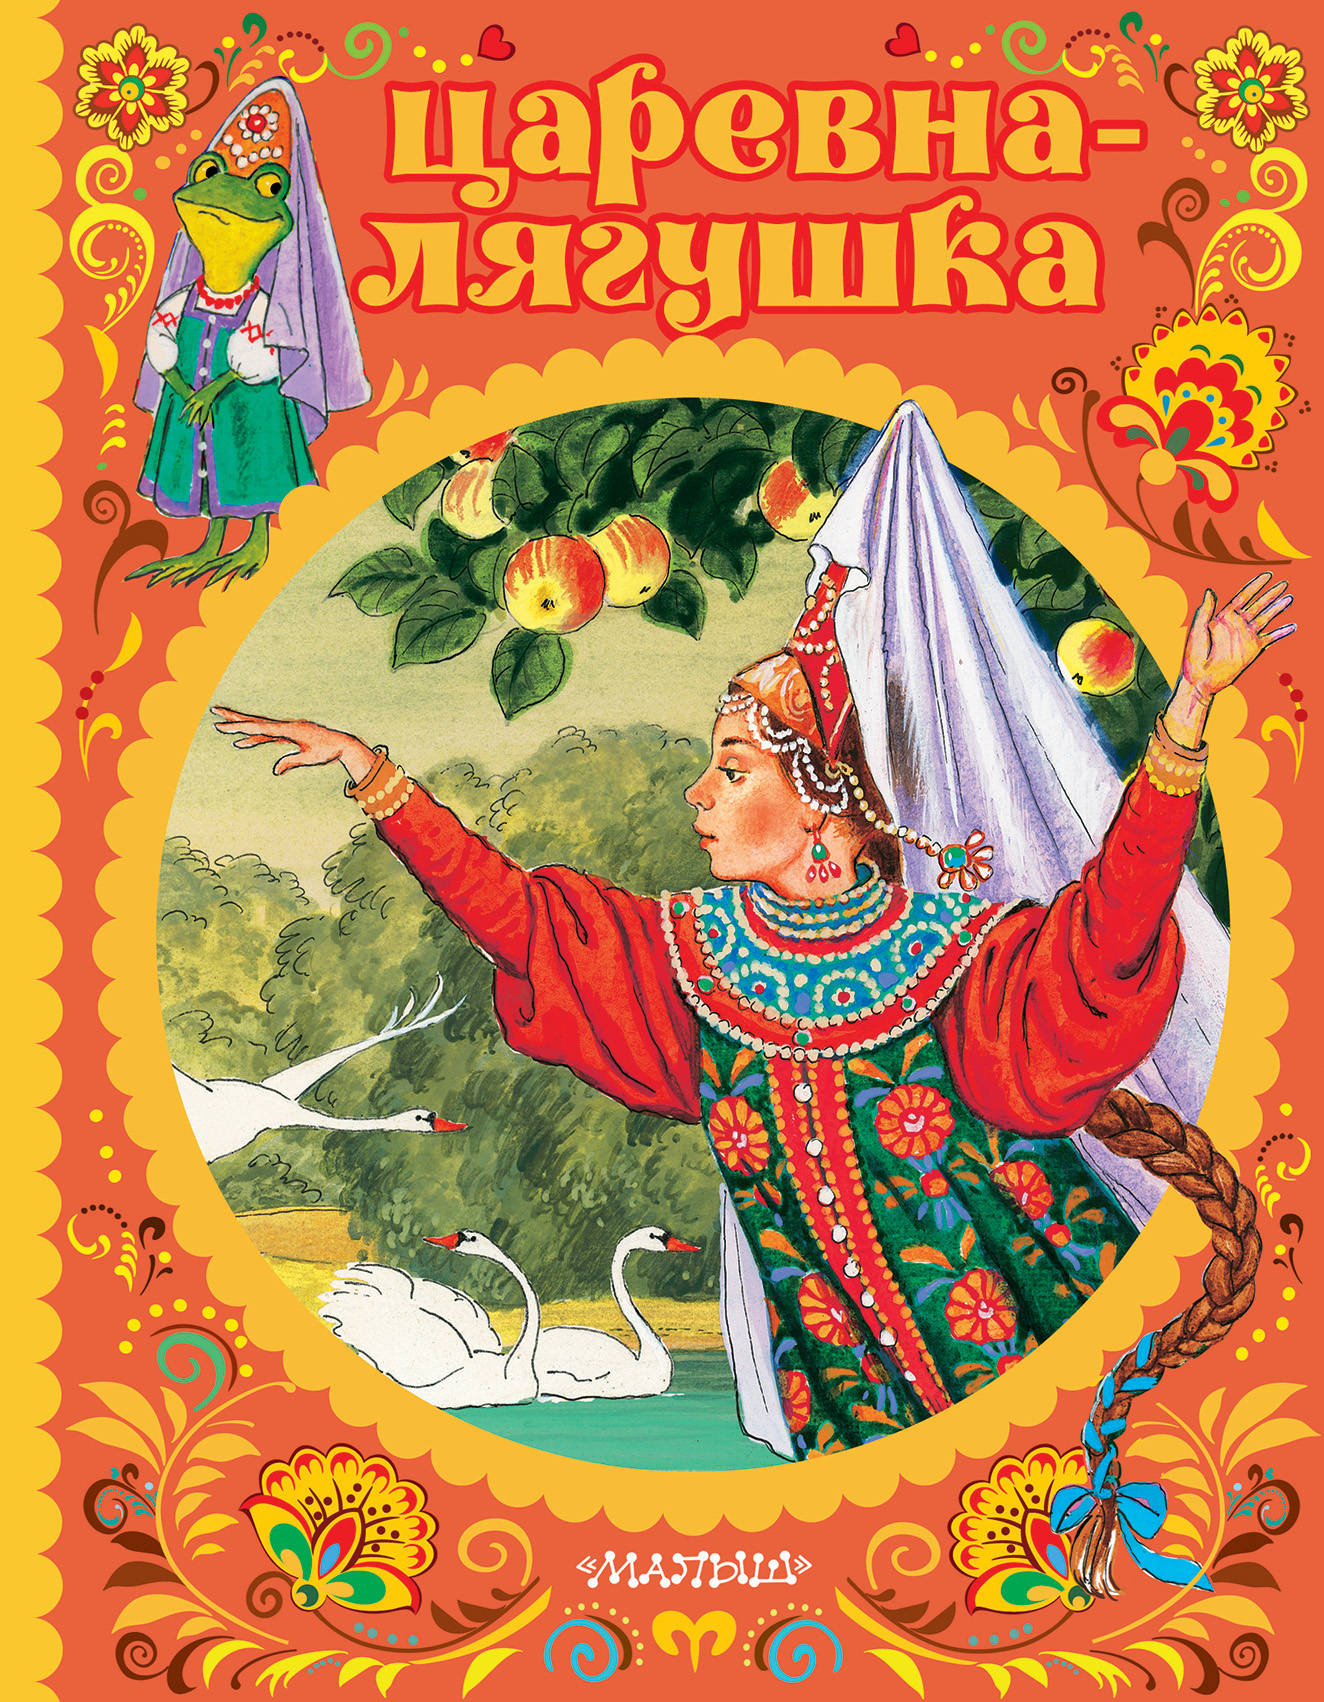 Книга про русские народные сказки